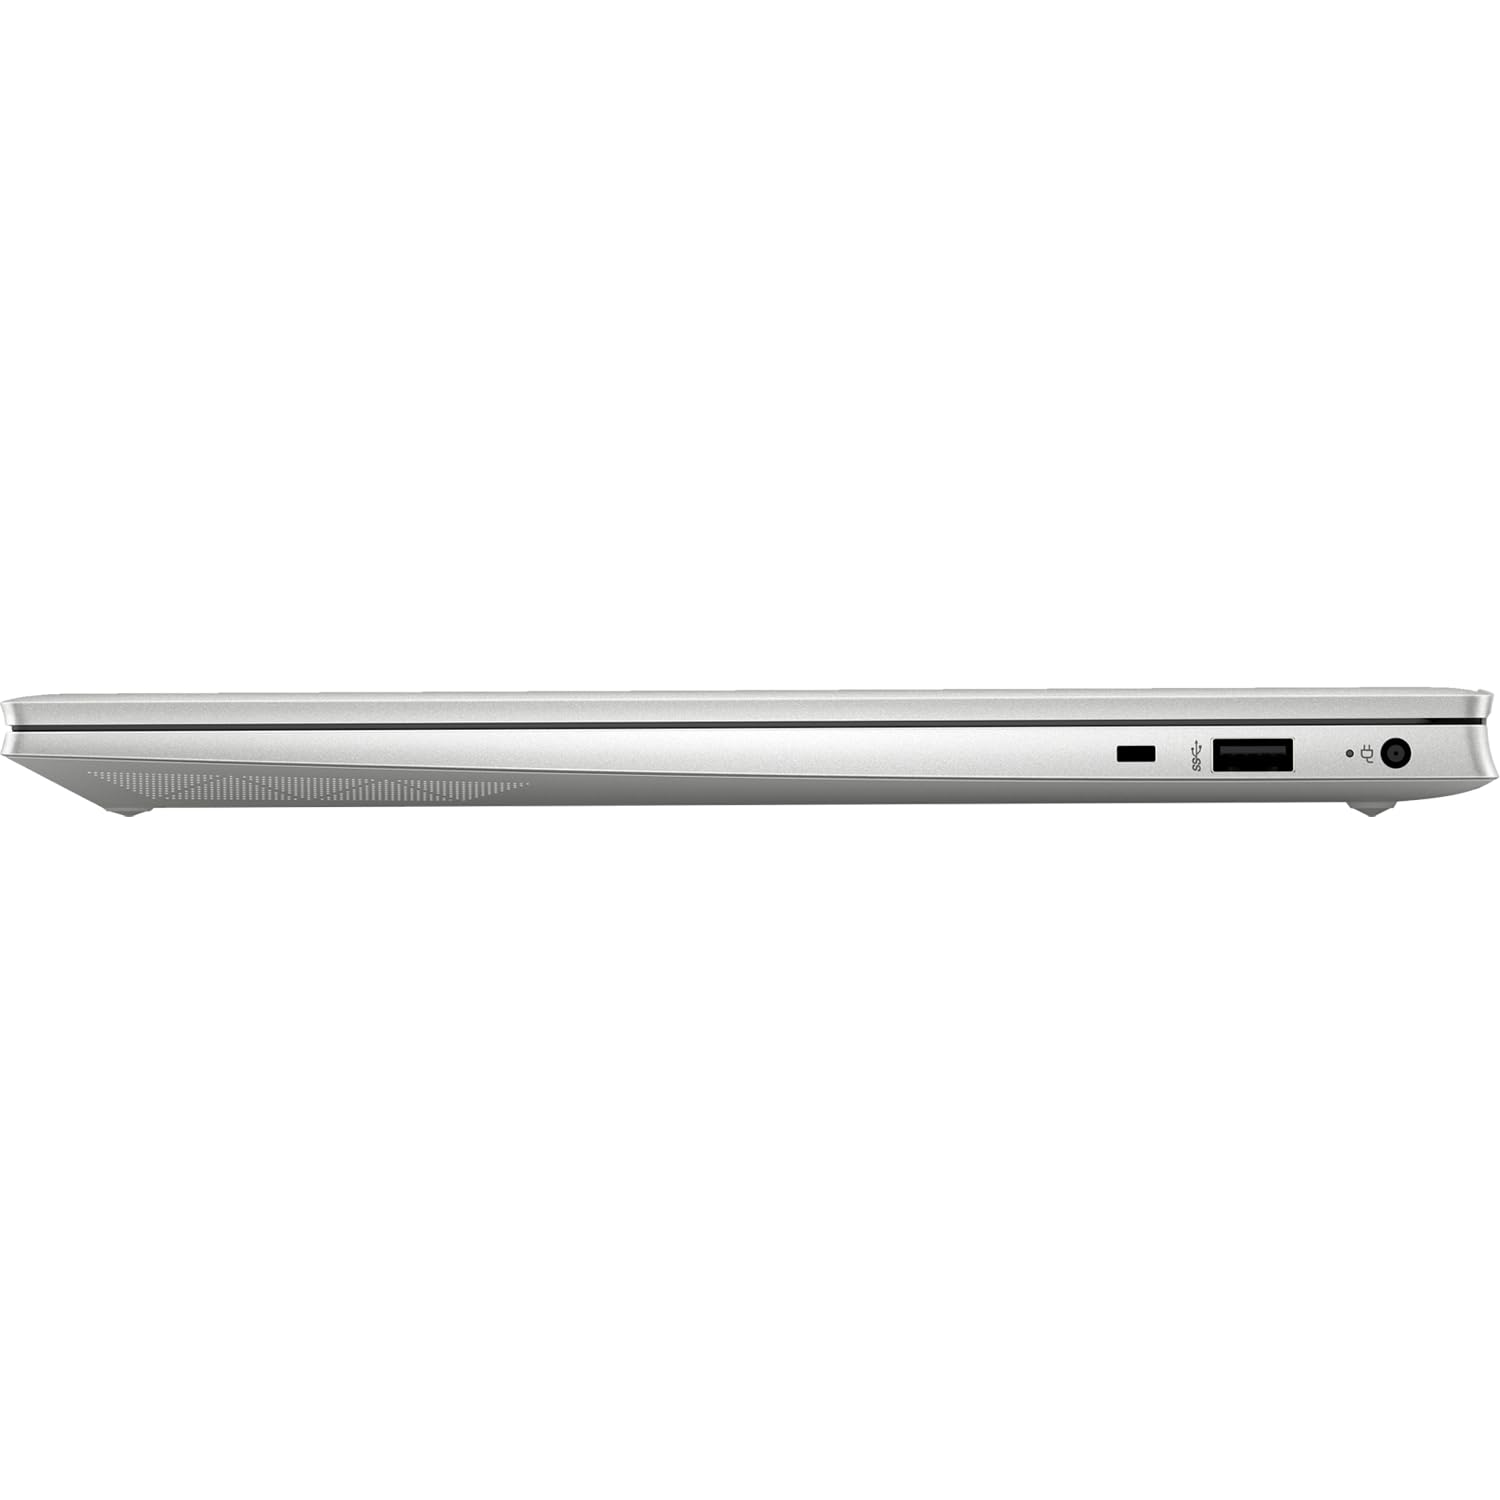 HP 2023 Latest Pavilion Business Laptop, 15.6